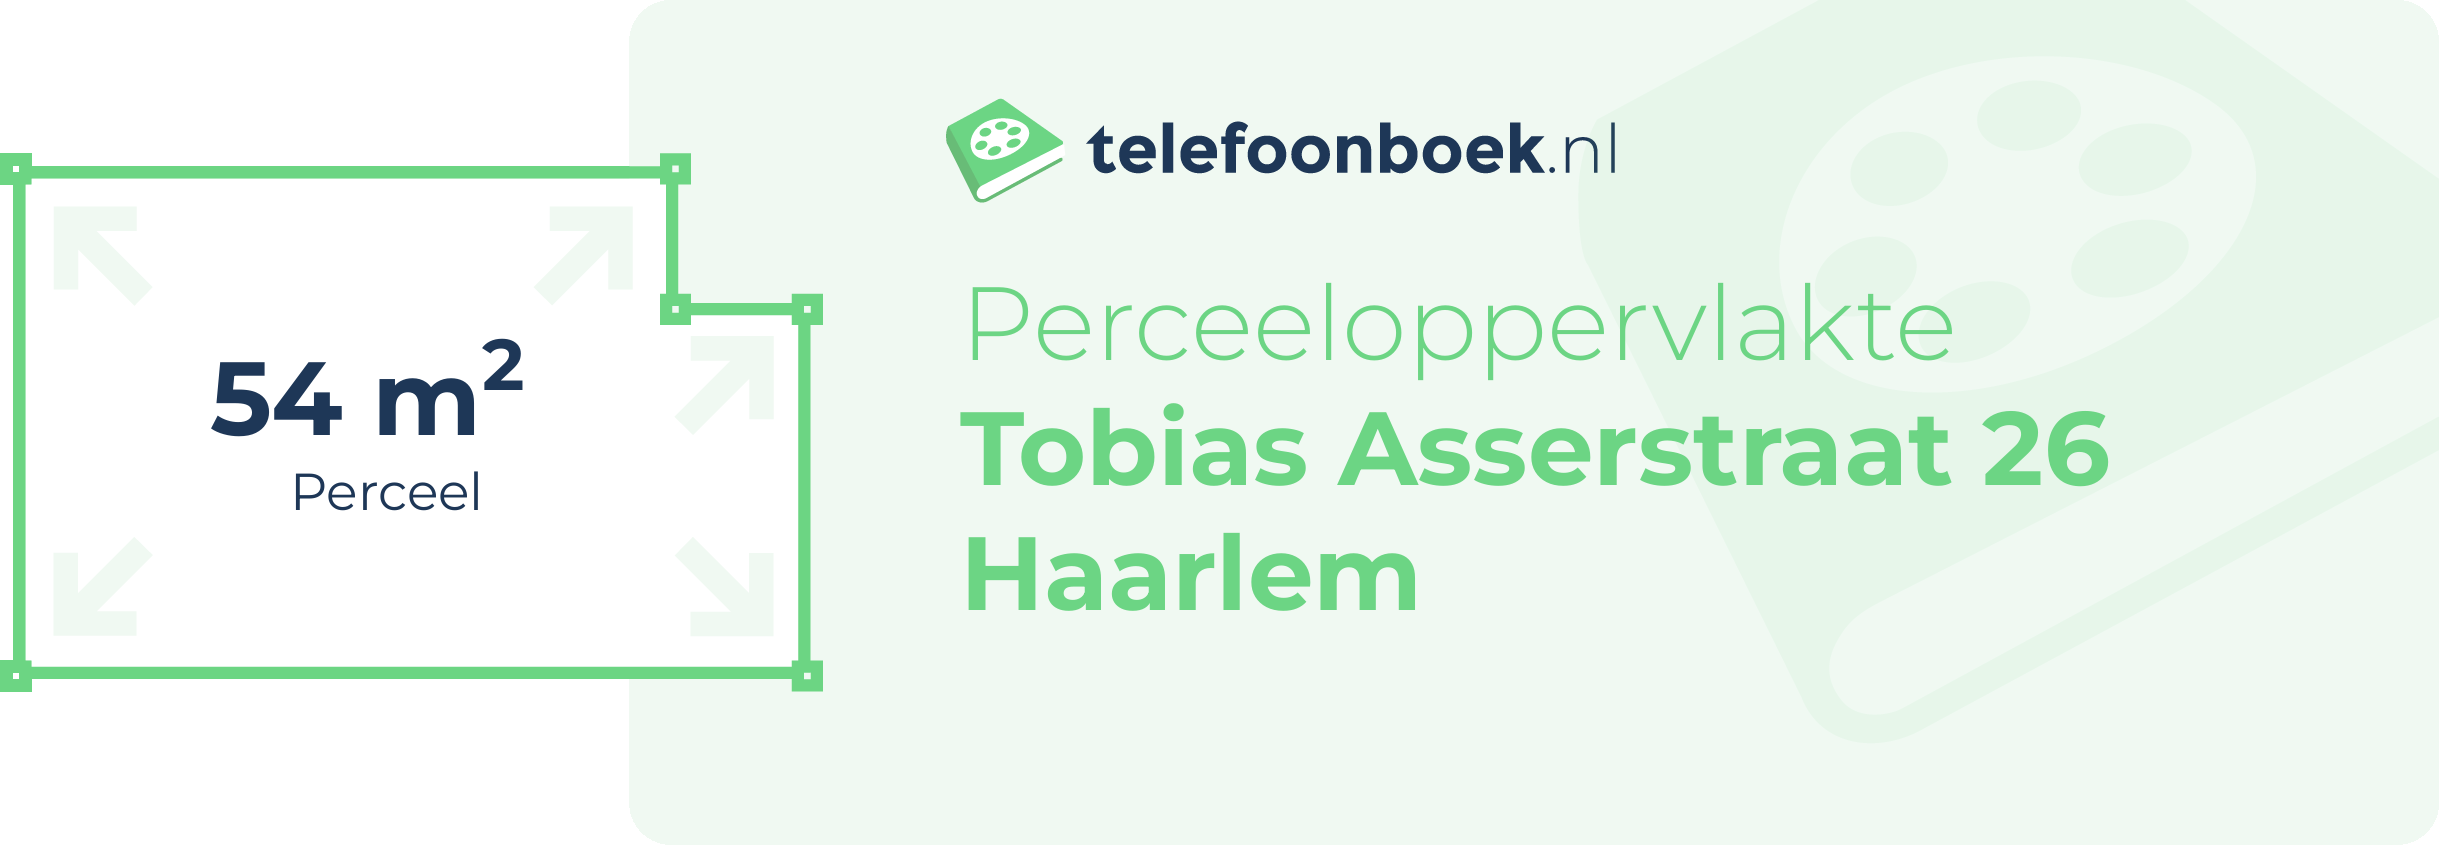 Perceeloppervlakte Tobias Asserstraat 26 Haarlem